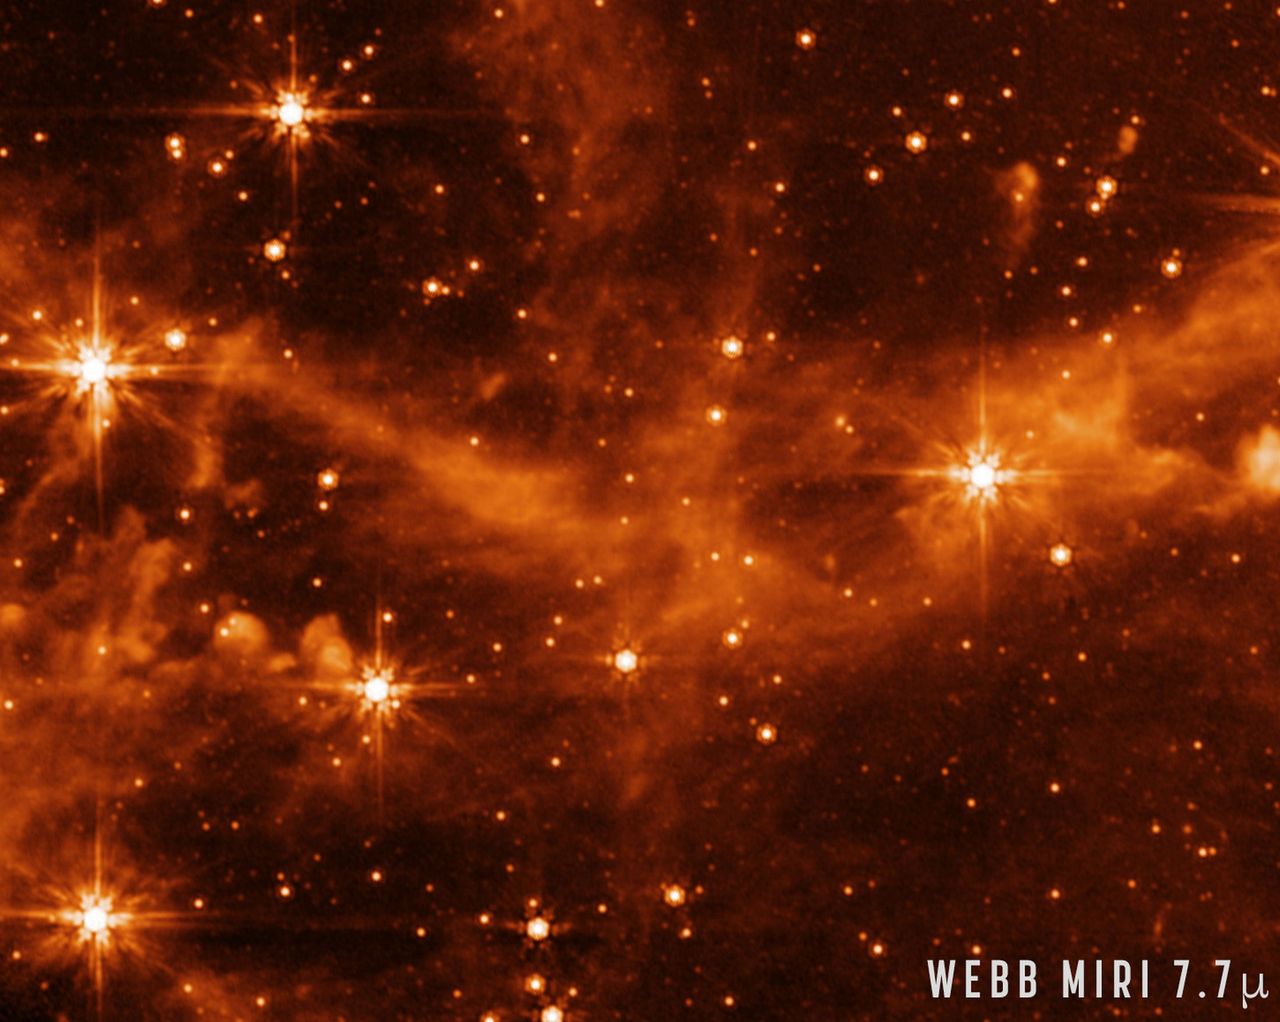 Zdjęcie z Kosmicznego Teleskopu Jamesa Webba wykonane przy pomocy aparatu MIRI